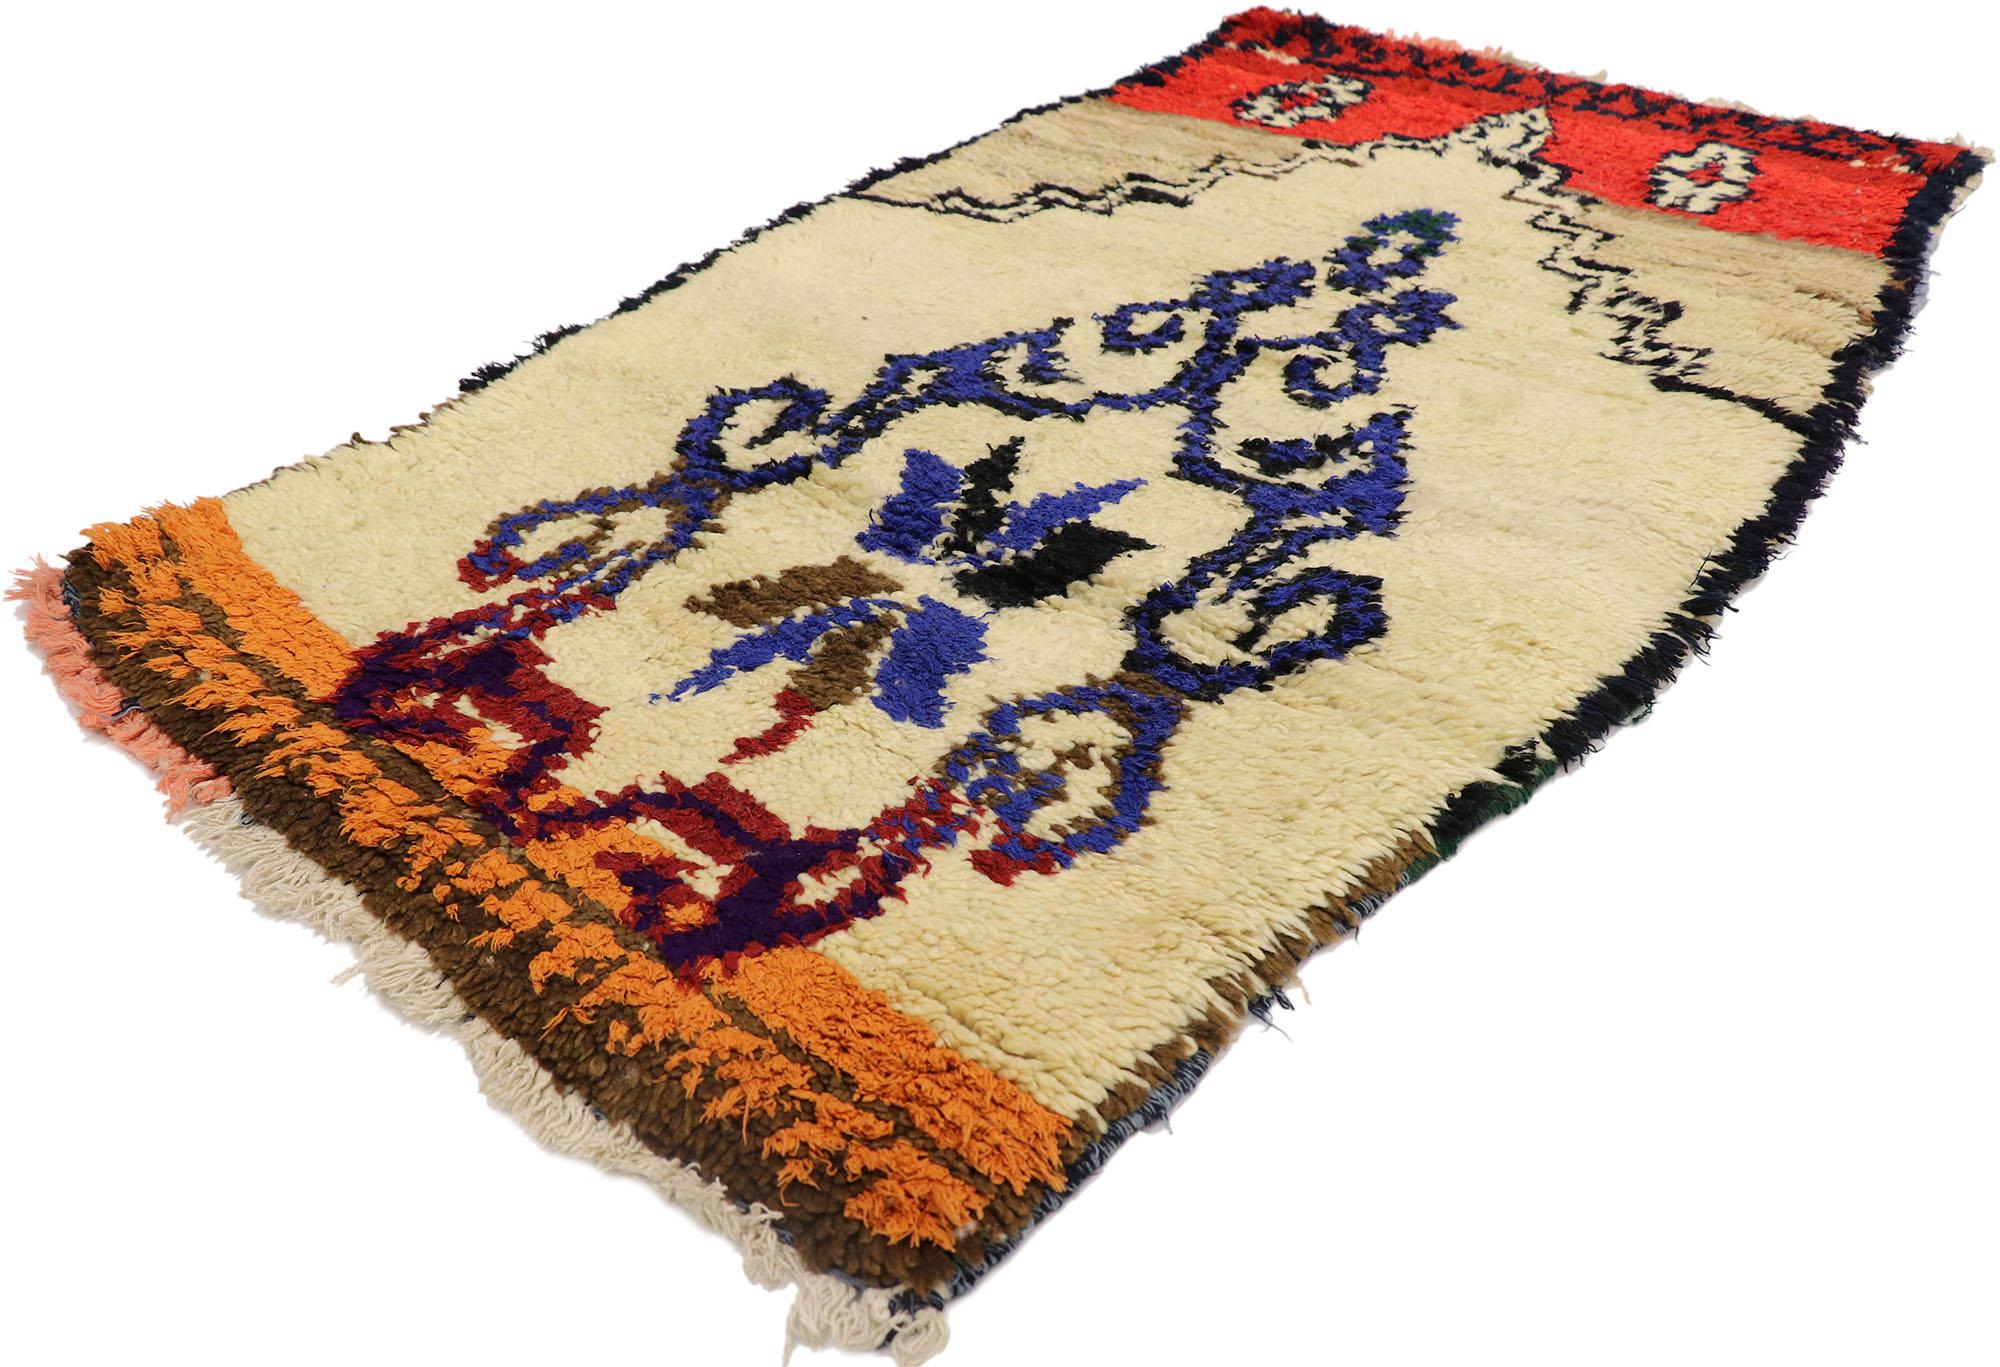 21576 Vintage Berber marokkanischen Azilal Teppich mit Bohemian Tribal Style 02'08 x 04'10. Dieser handgeknüpfte marokkanische Azilal-Teppich aus alter Berberwolle mit seinem kühnen, ausdrucksstarken Stammesmuster, seinen unglaublichen Details und